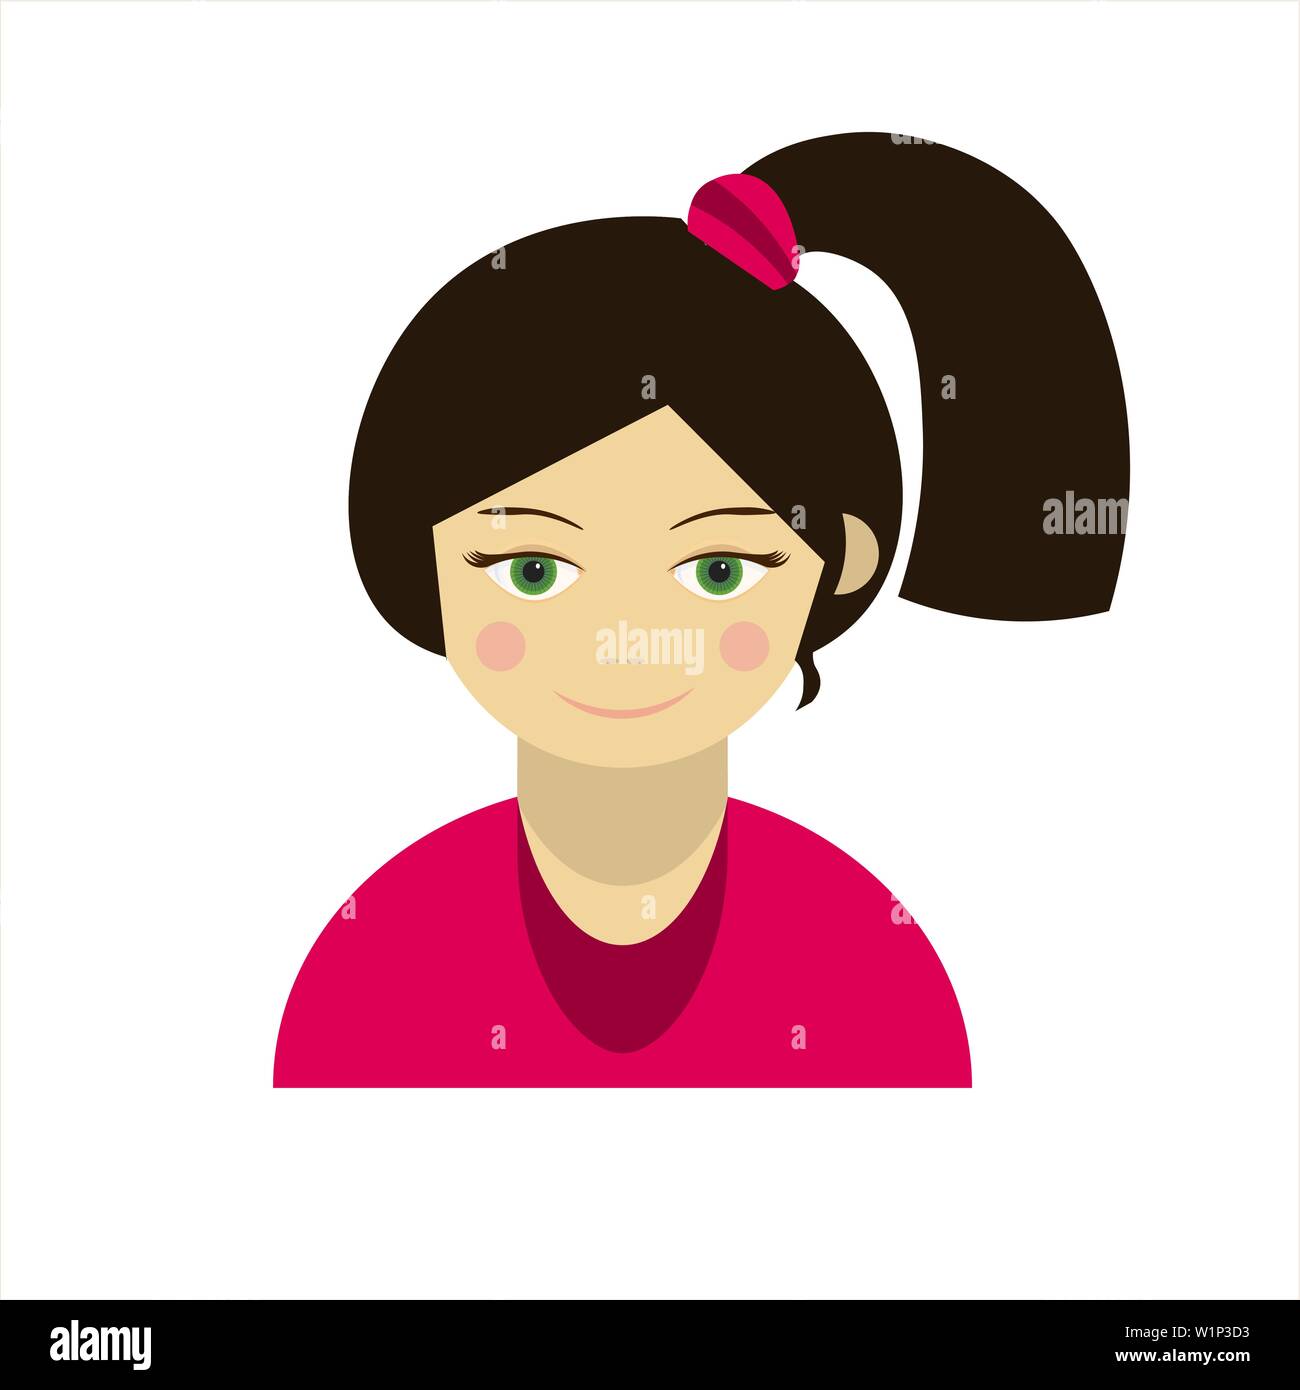 L'icône de fille avec une queue sur sa tête, symbole de l'avatar Illustration de Vecteur